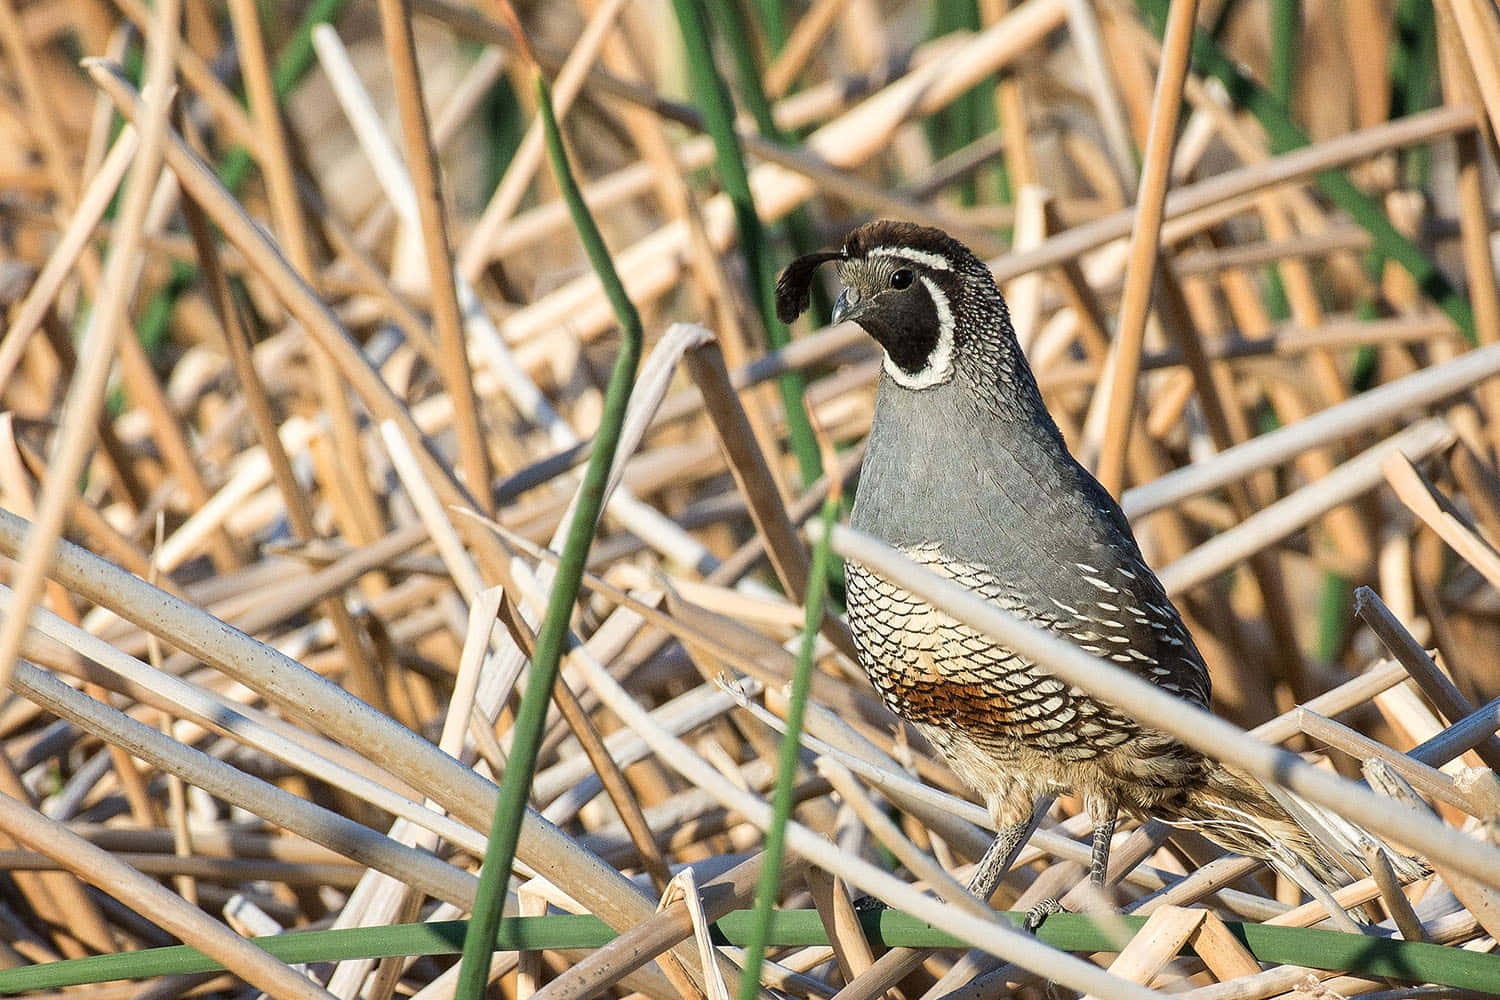 Close-up shot of a quail in its natural habitat